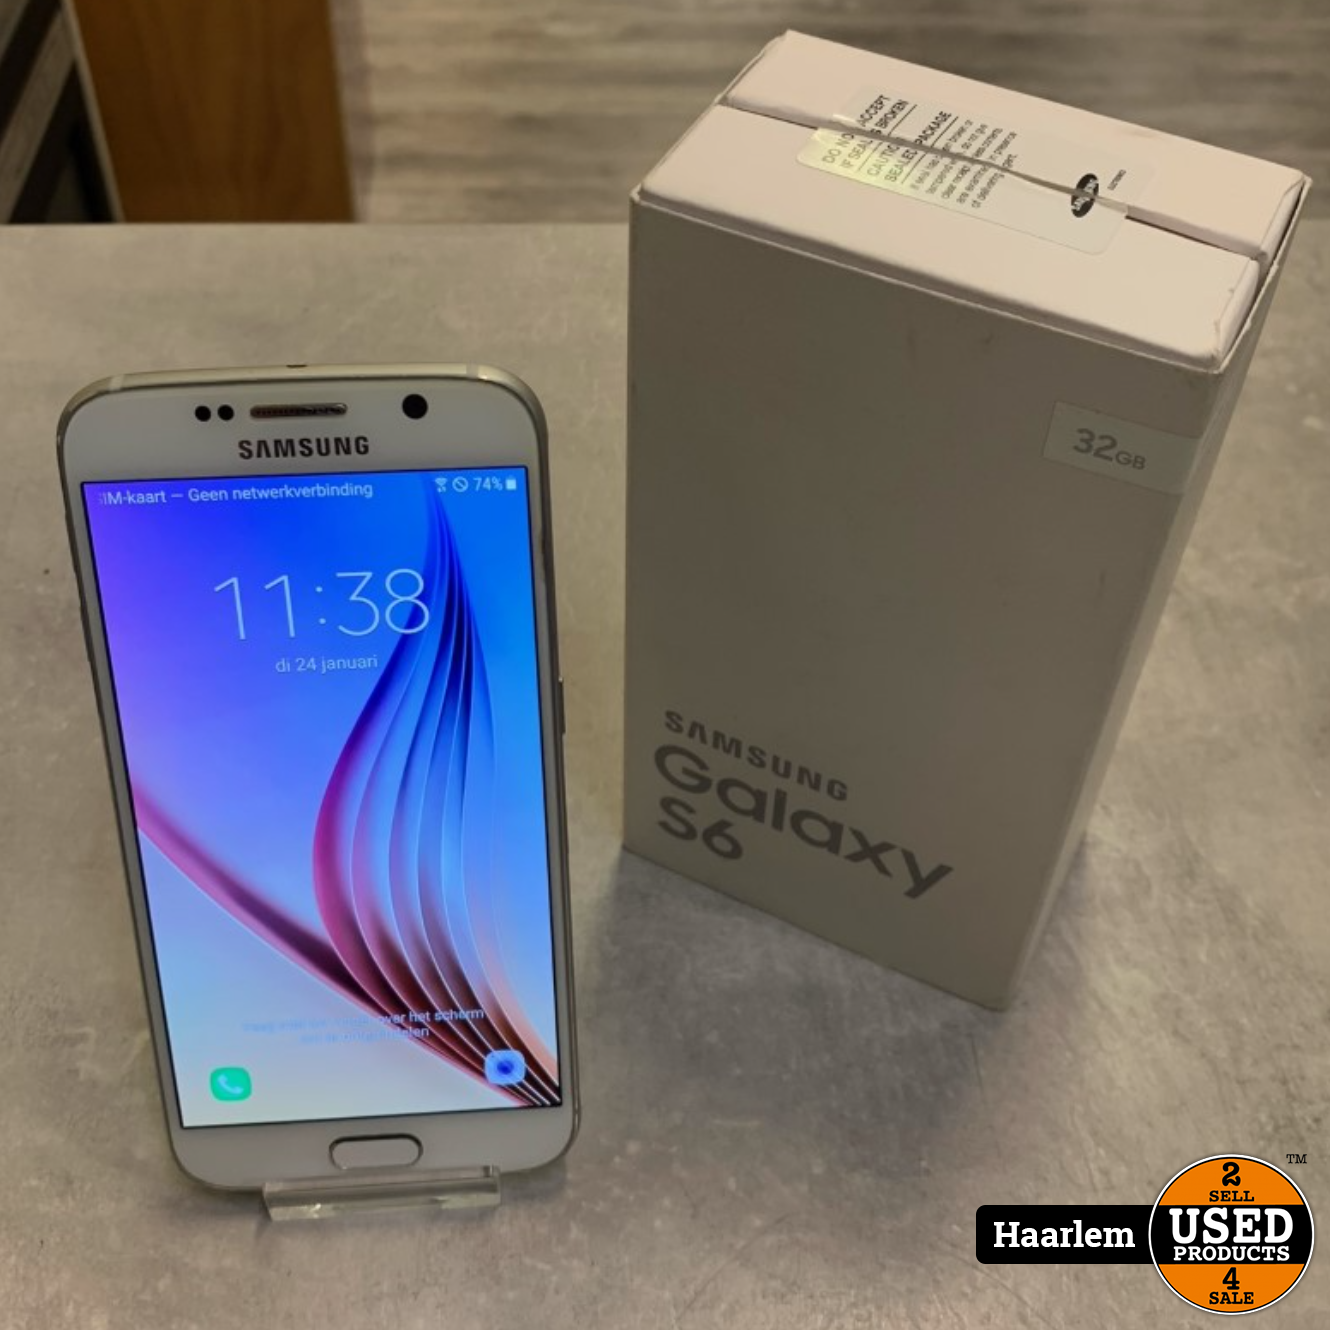 Meetbaar verwijzen Op de een of andere manier Samsung Galaxy S6 32gb wit in doos - Used Products Haarlem Cronjéstraat